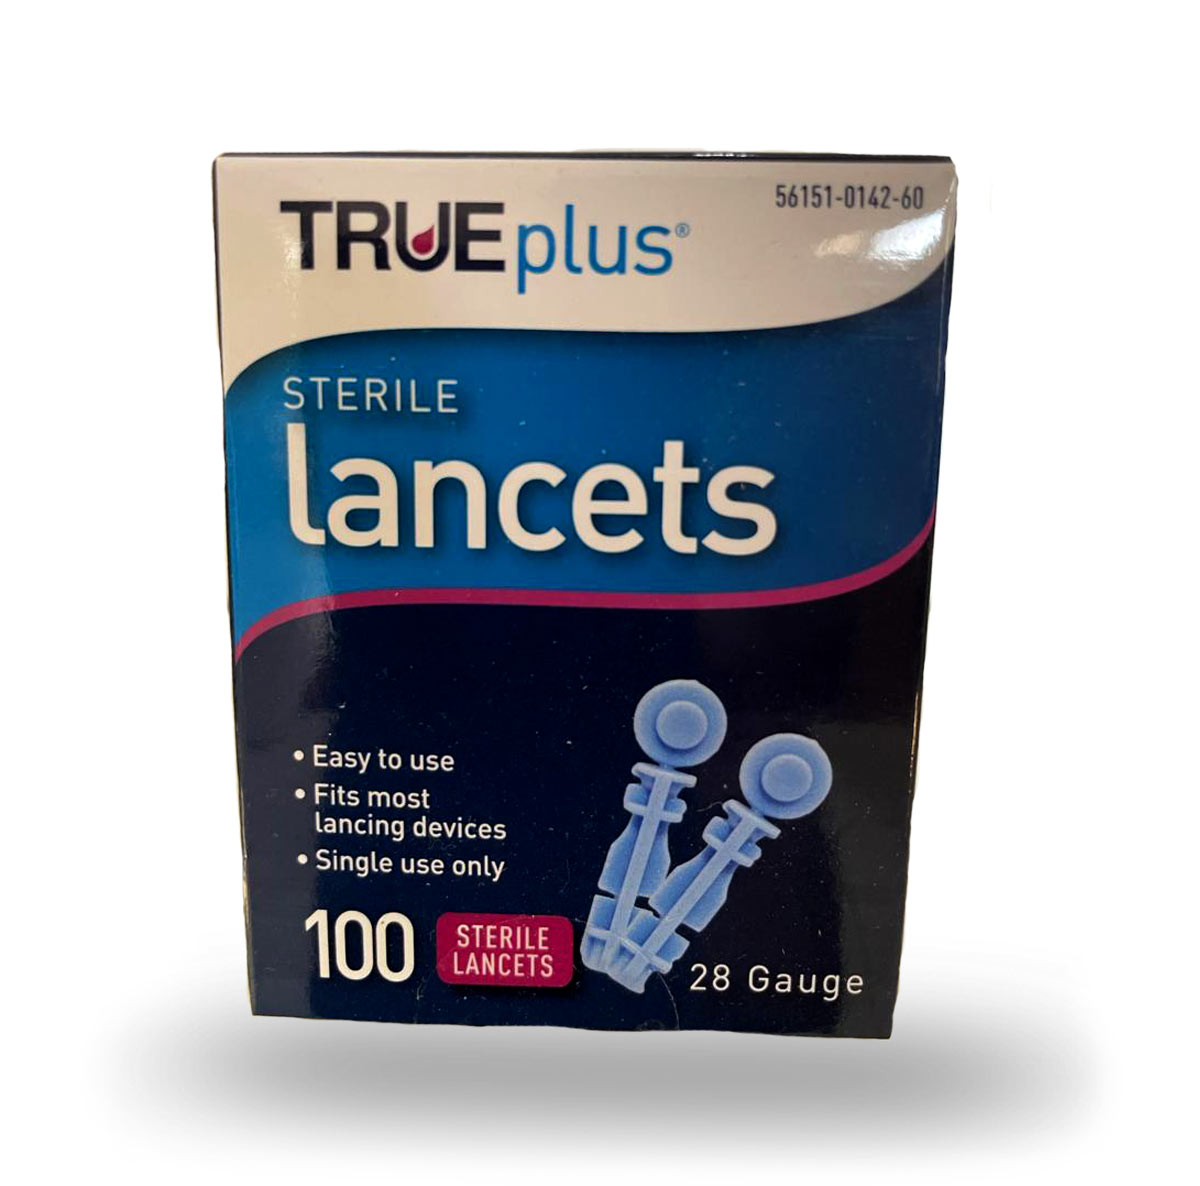 True Plus Sterile Lancets 28 Gauge - 100 Units